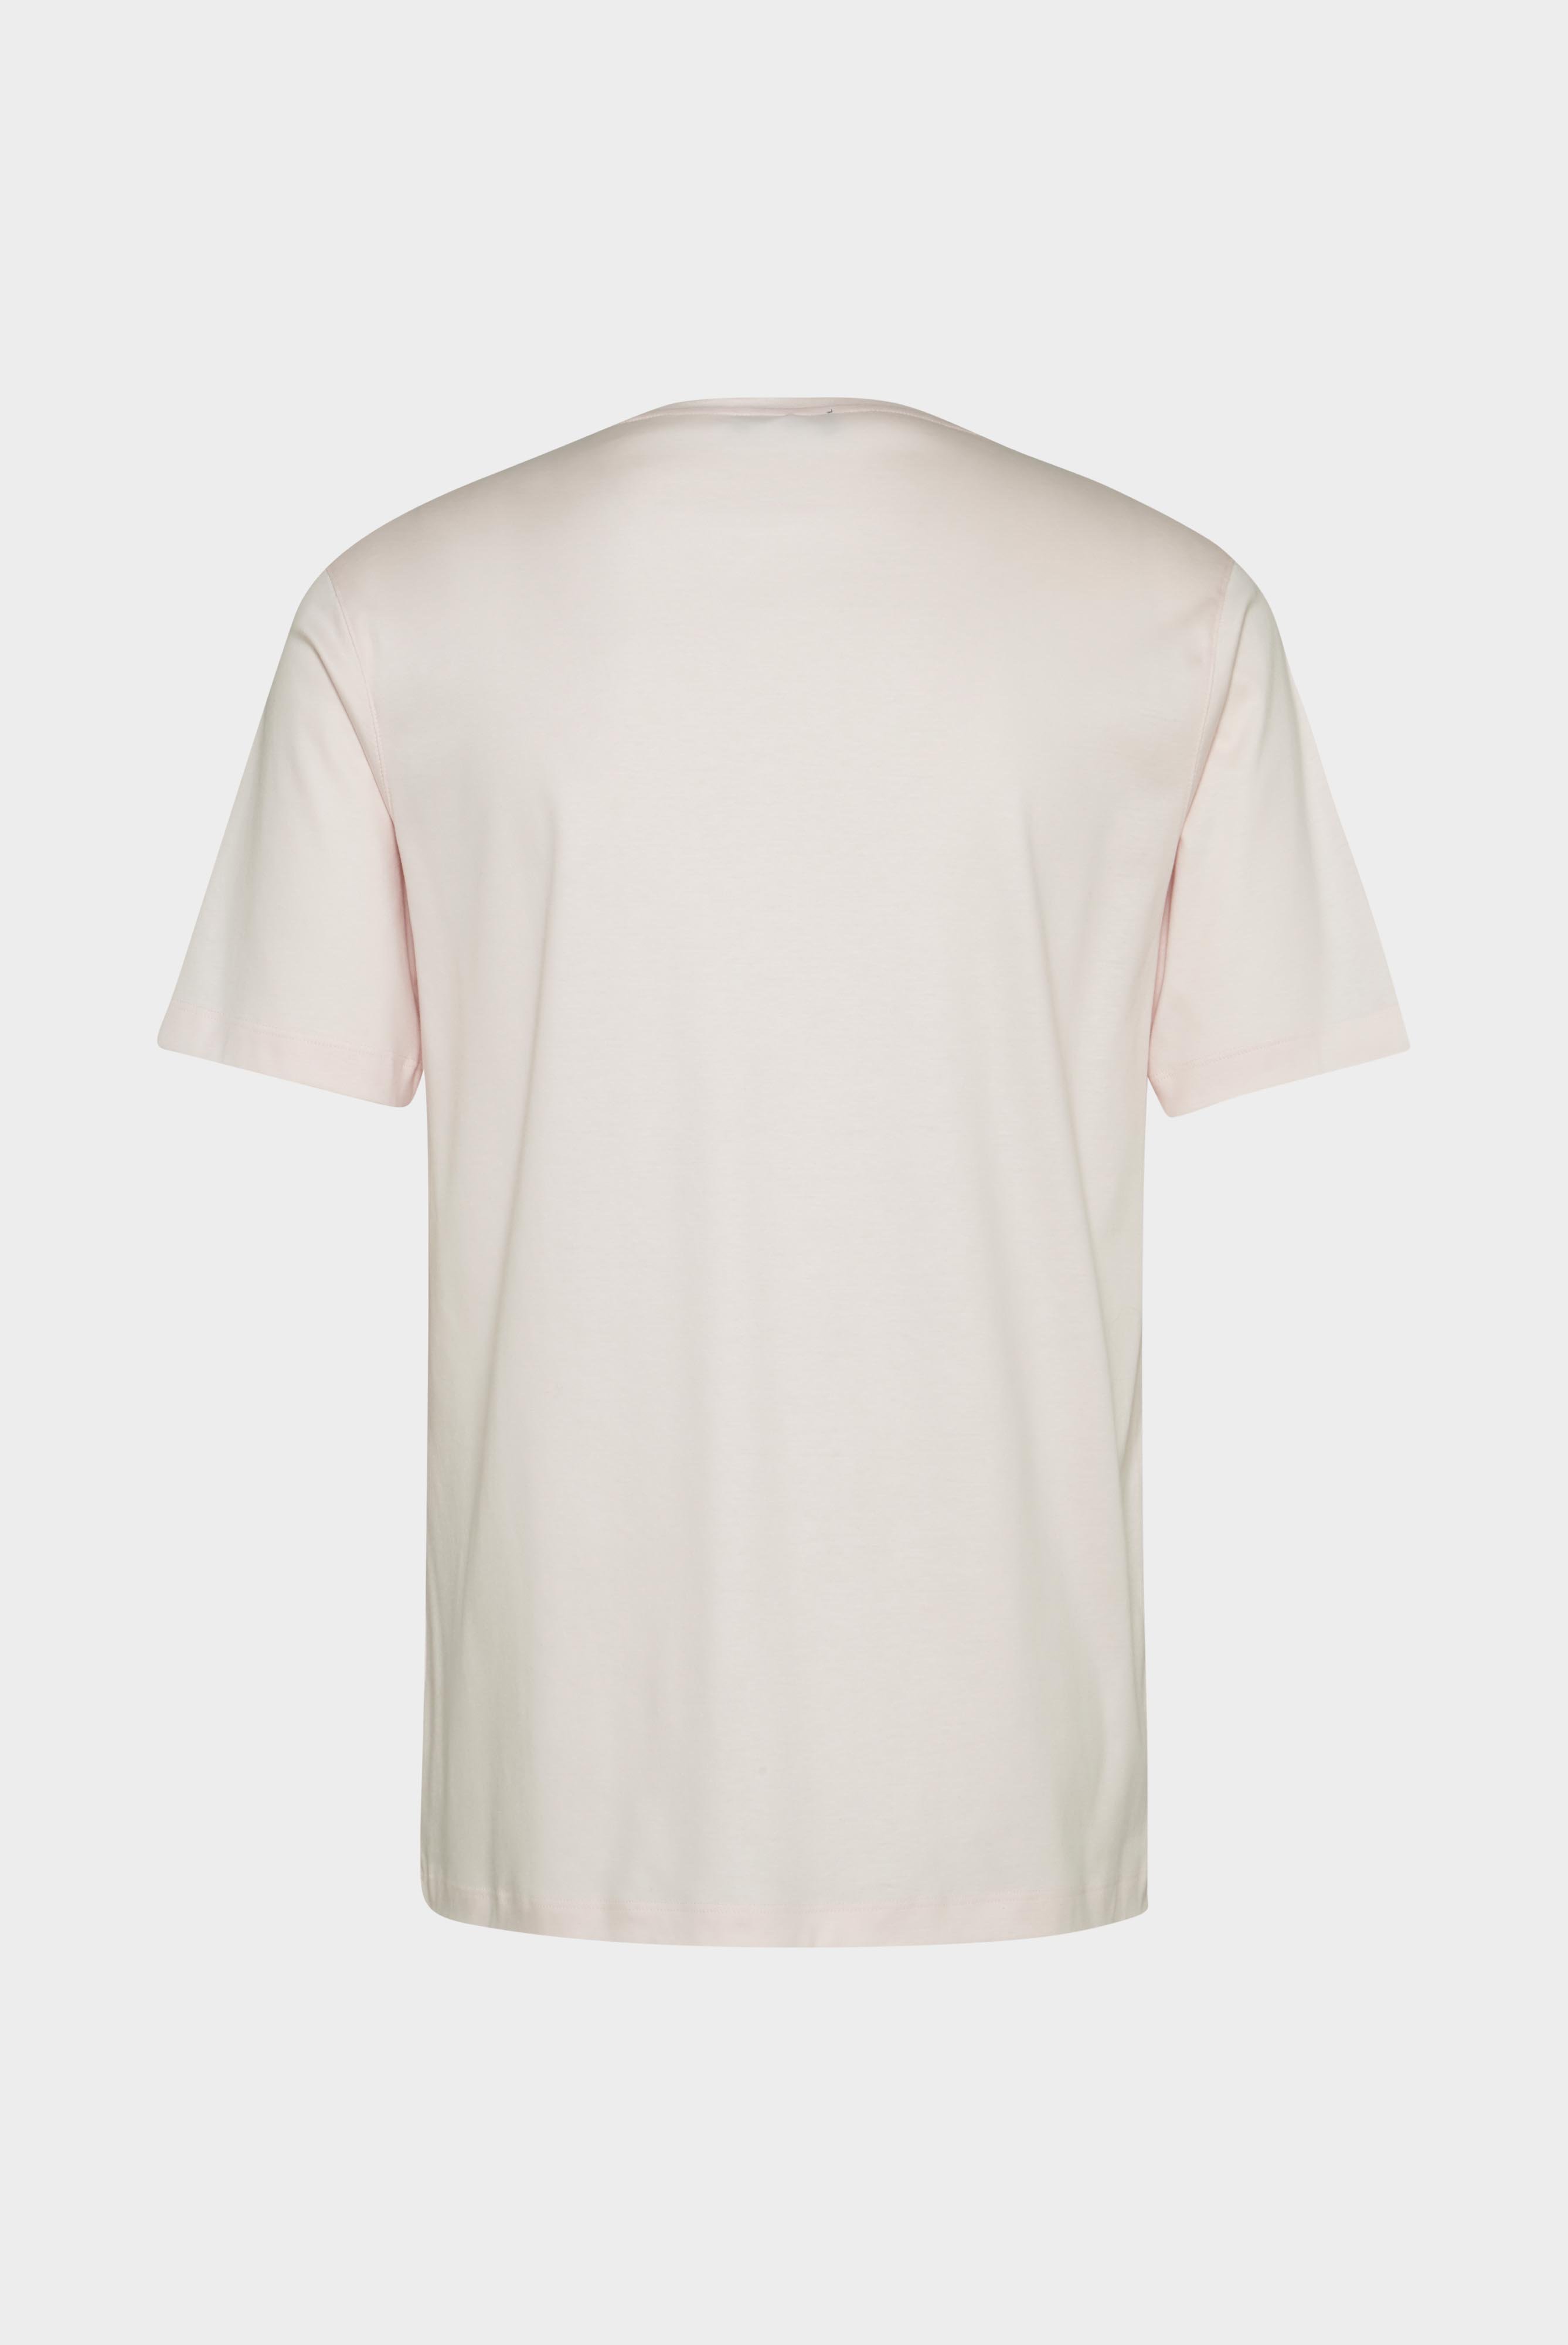 T-Shirts+Oversize Jersey T-Shirt mit Brusttasche+20.1776.GZ.180031.510.S